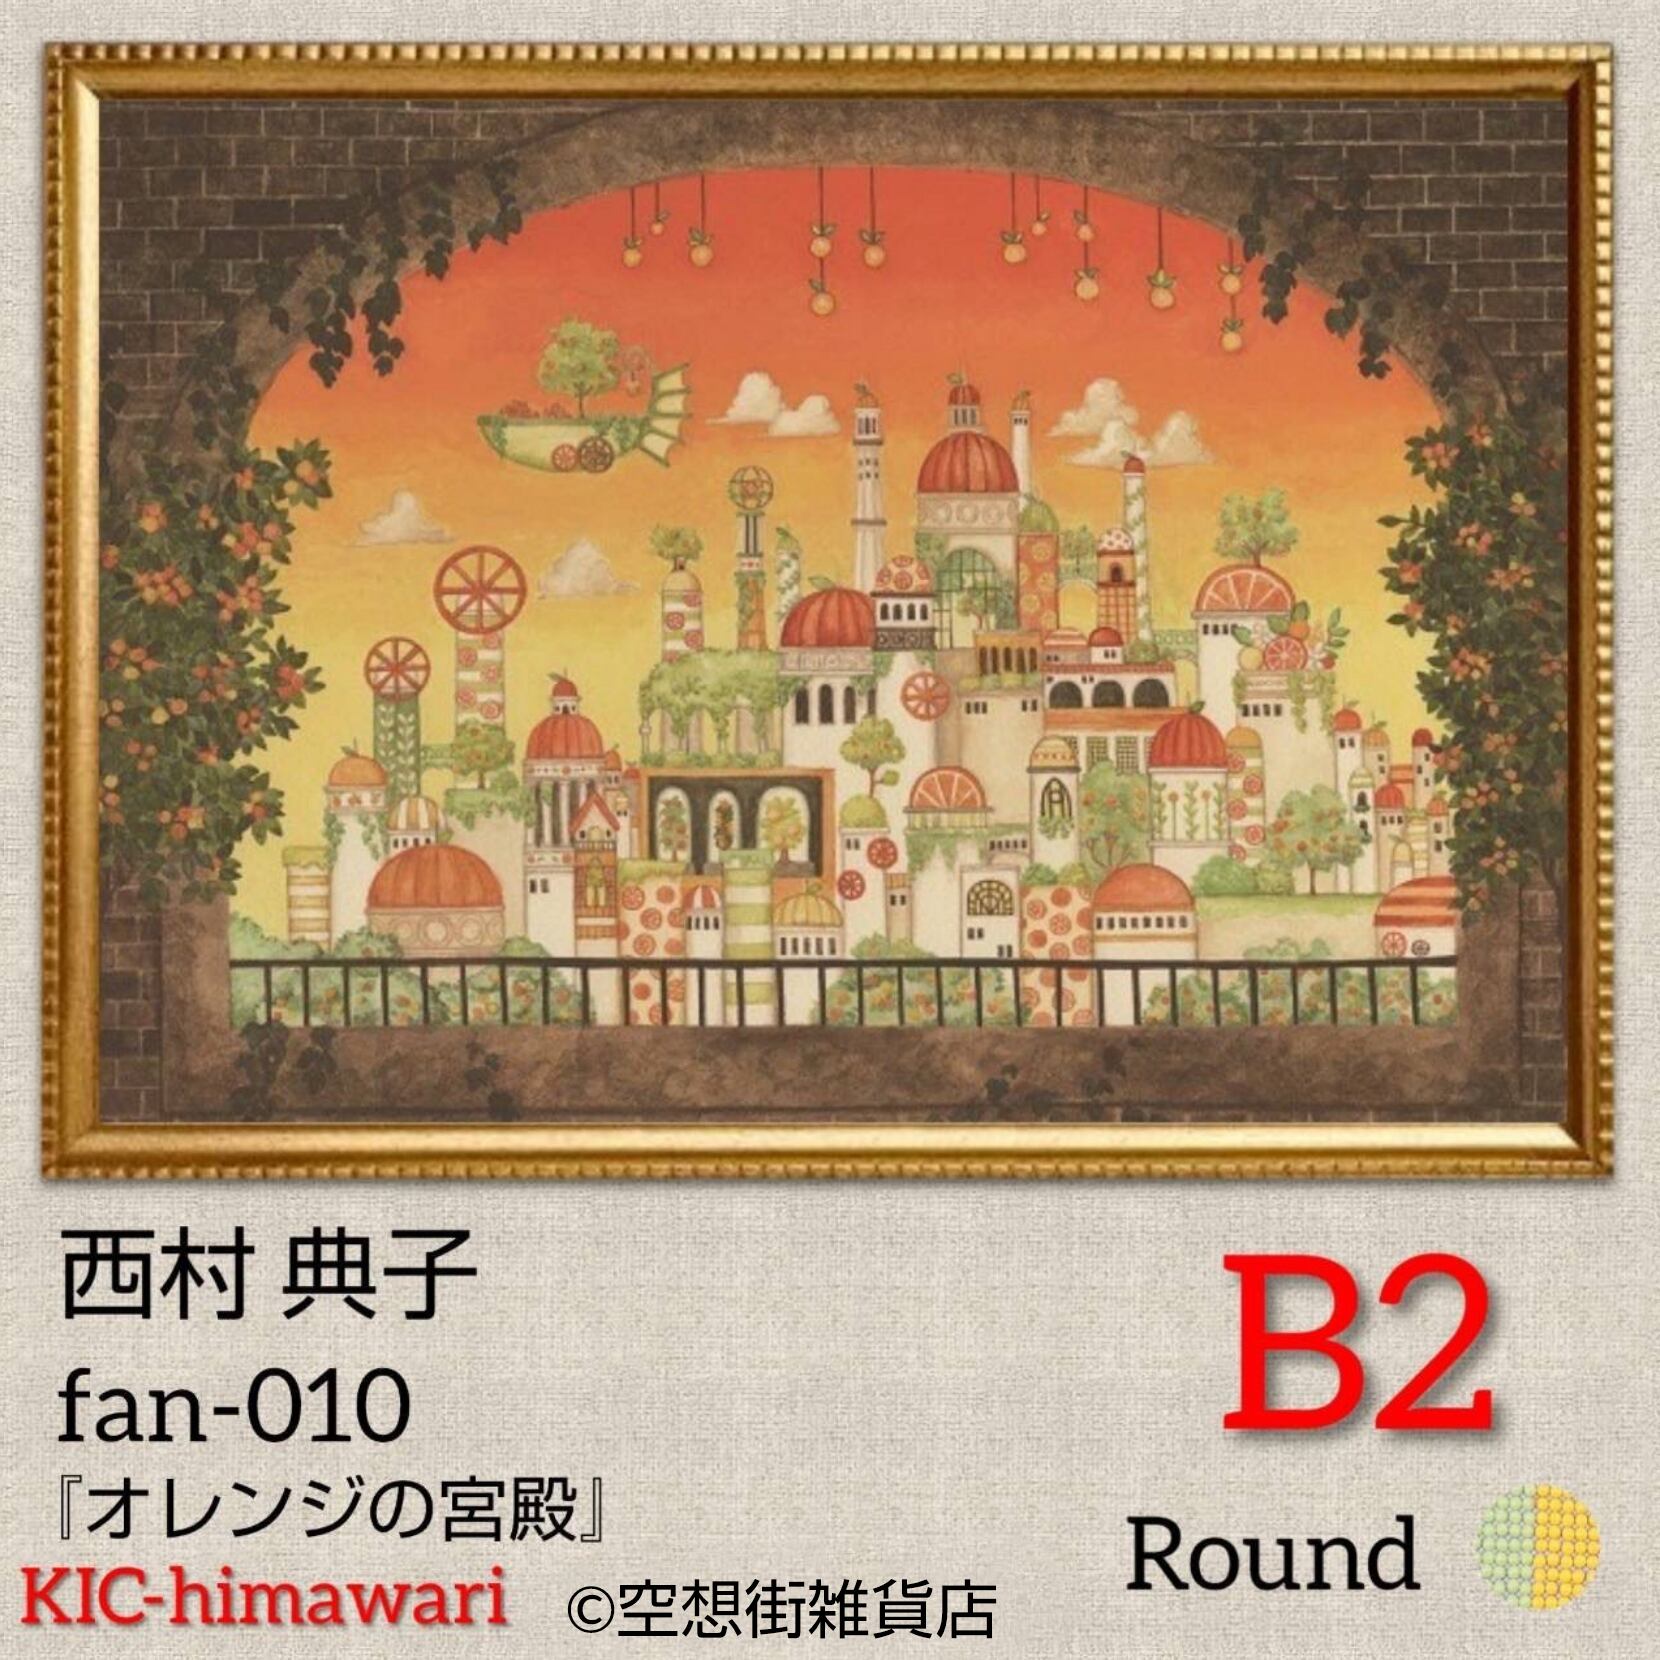 B2サイズ 丸型ビーズ【fan-010】フルダイヤモンドアート